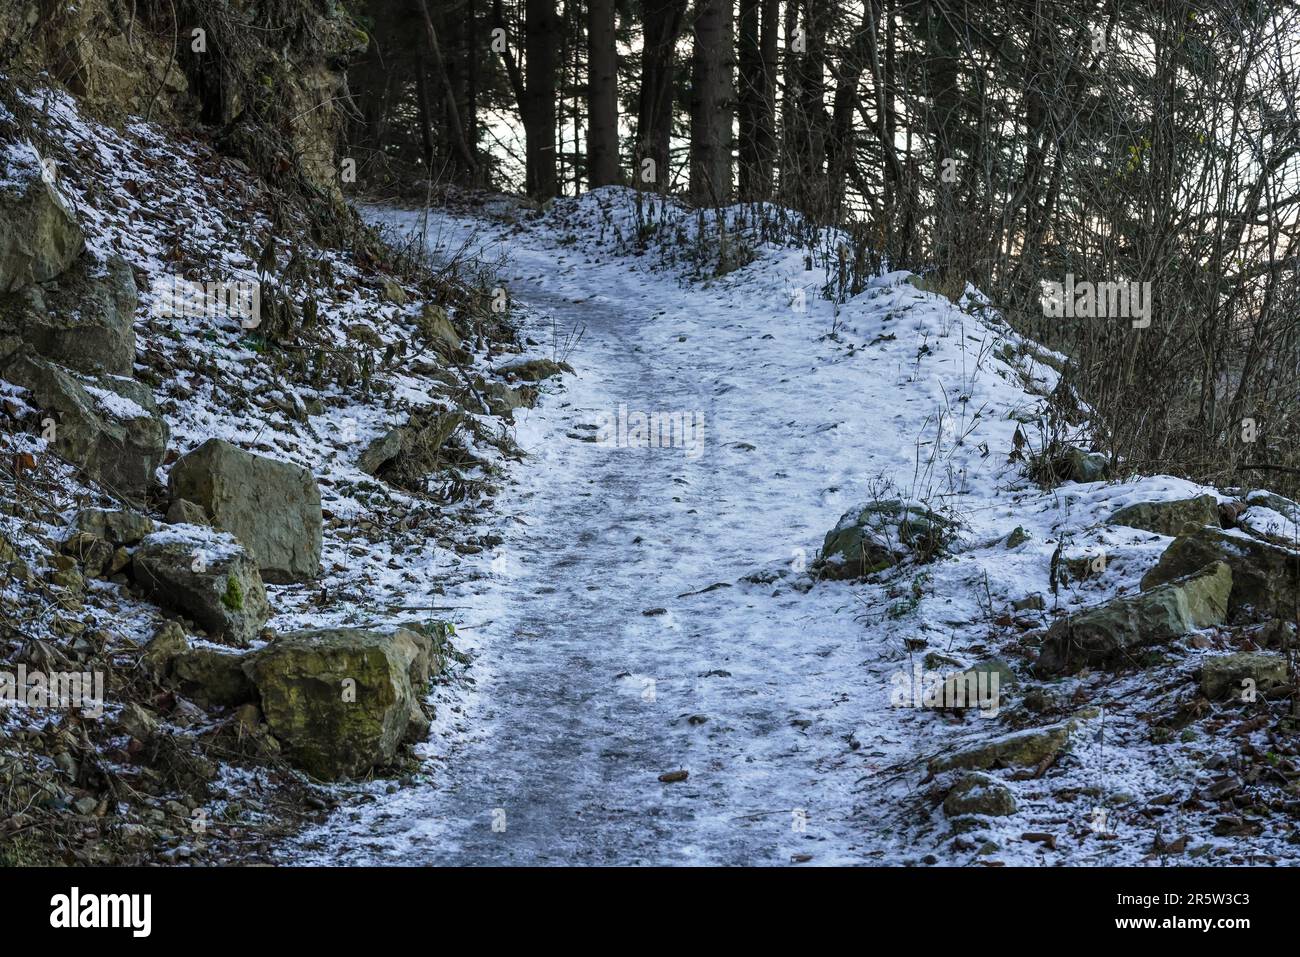 Sentier forestier en montée avec pierres sur les côtés, sol recouvert de neige Banque D'Images